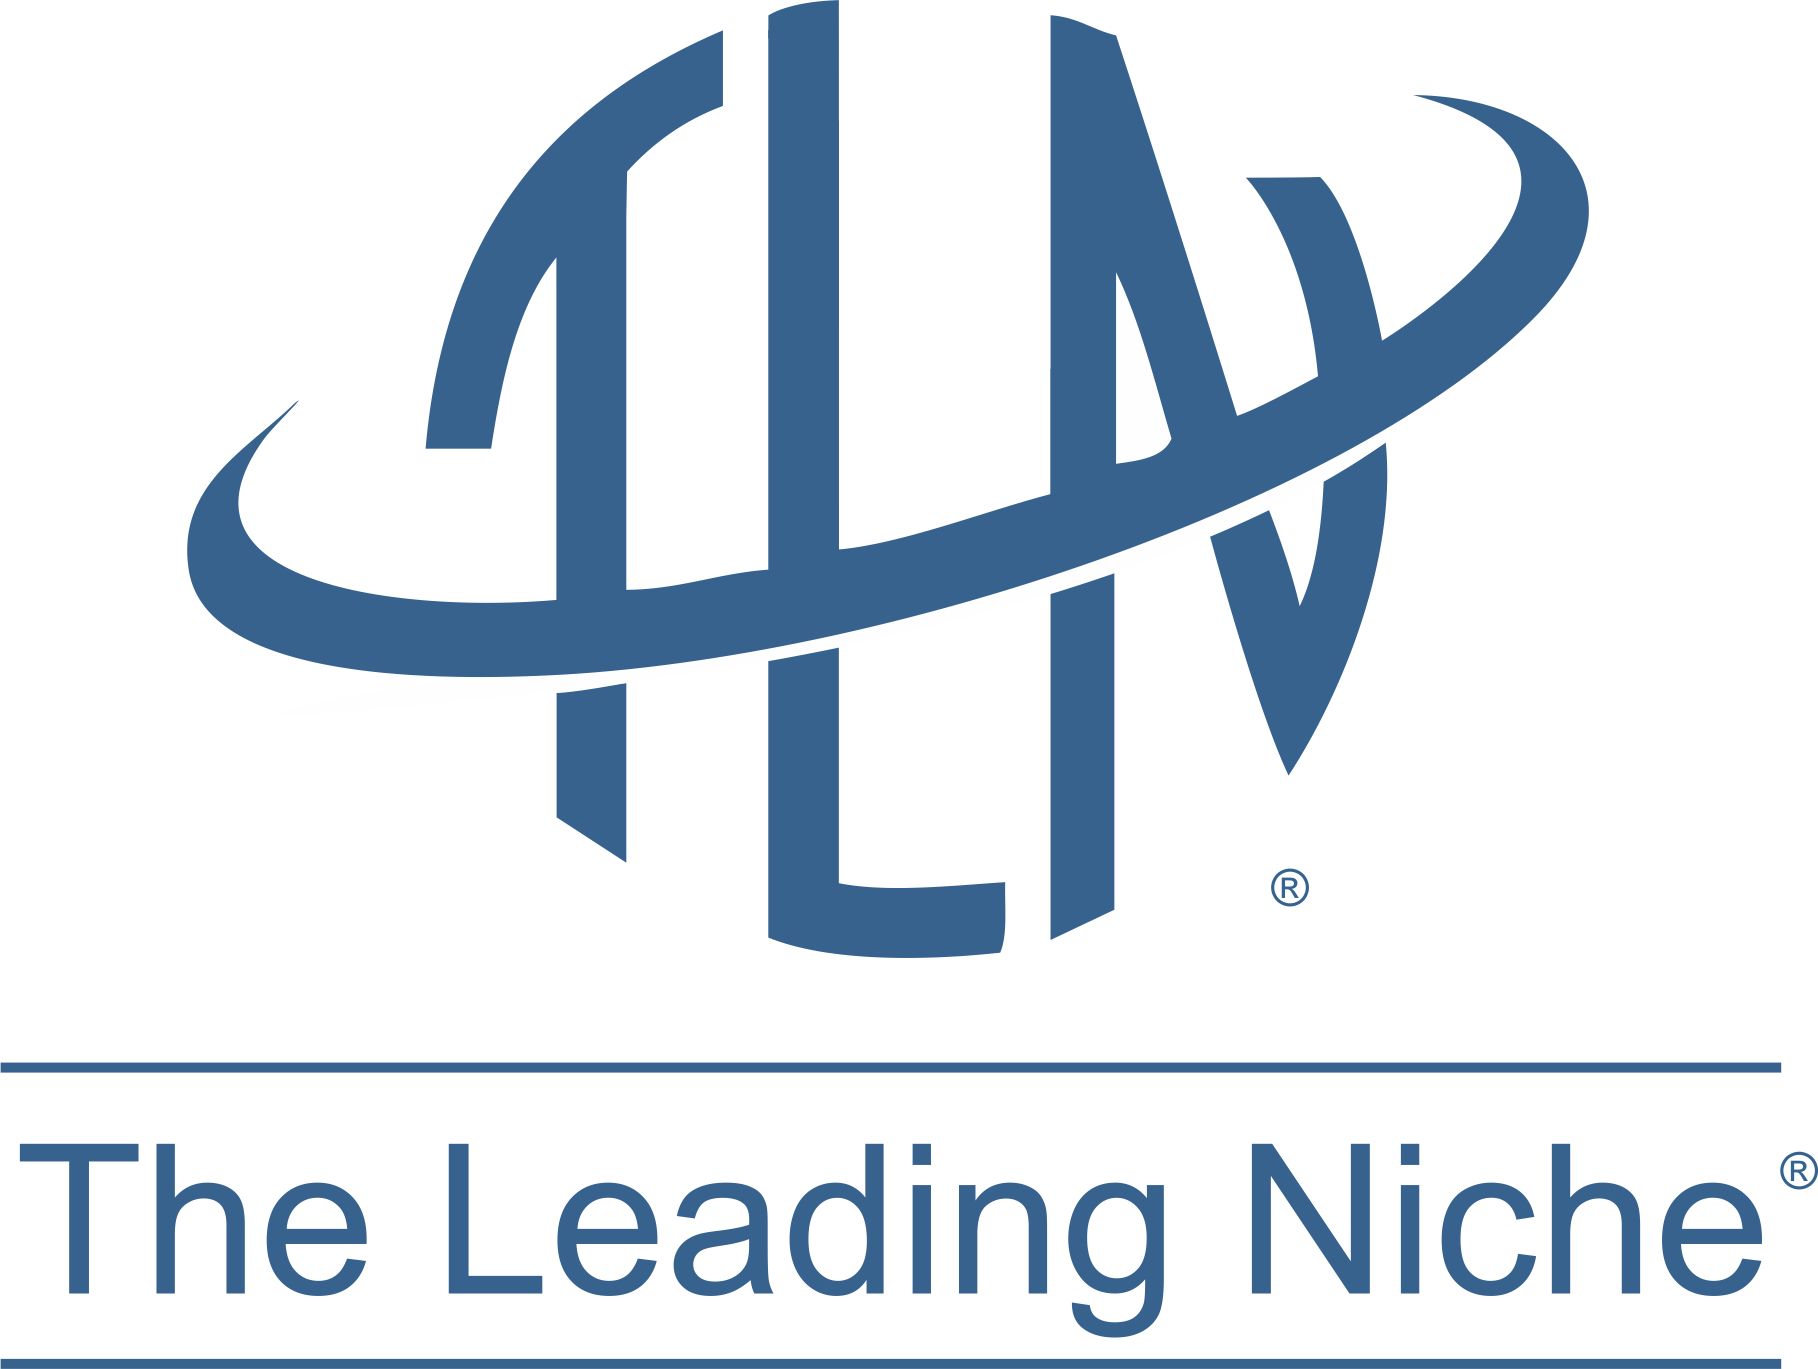 The Leading Niche logo